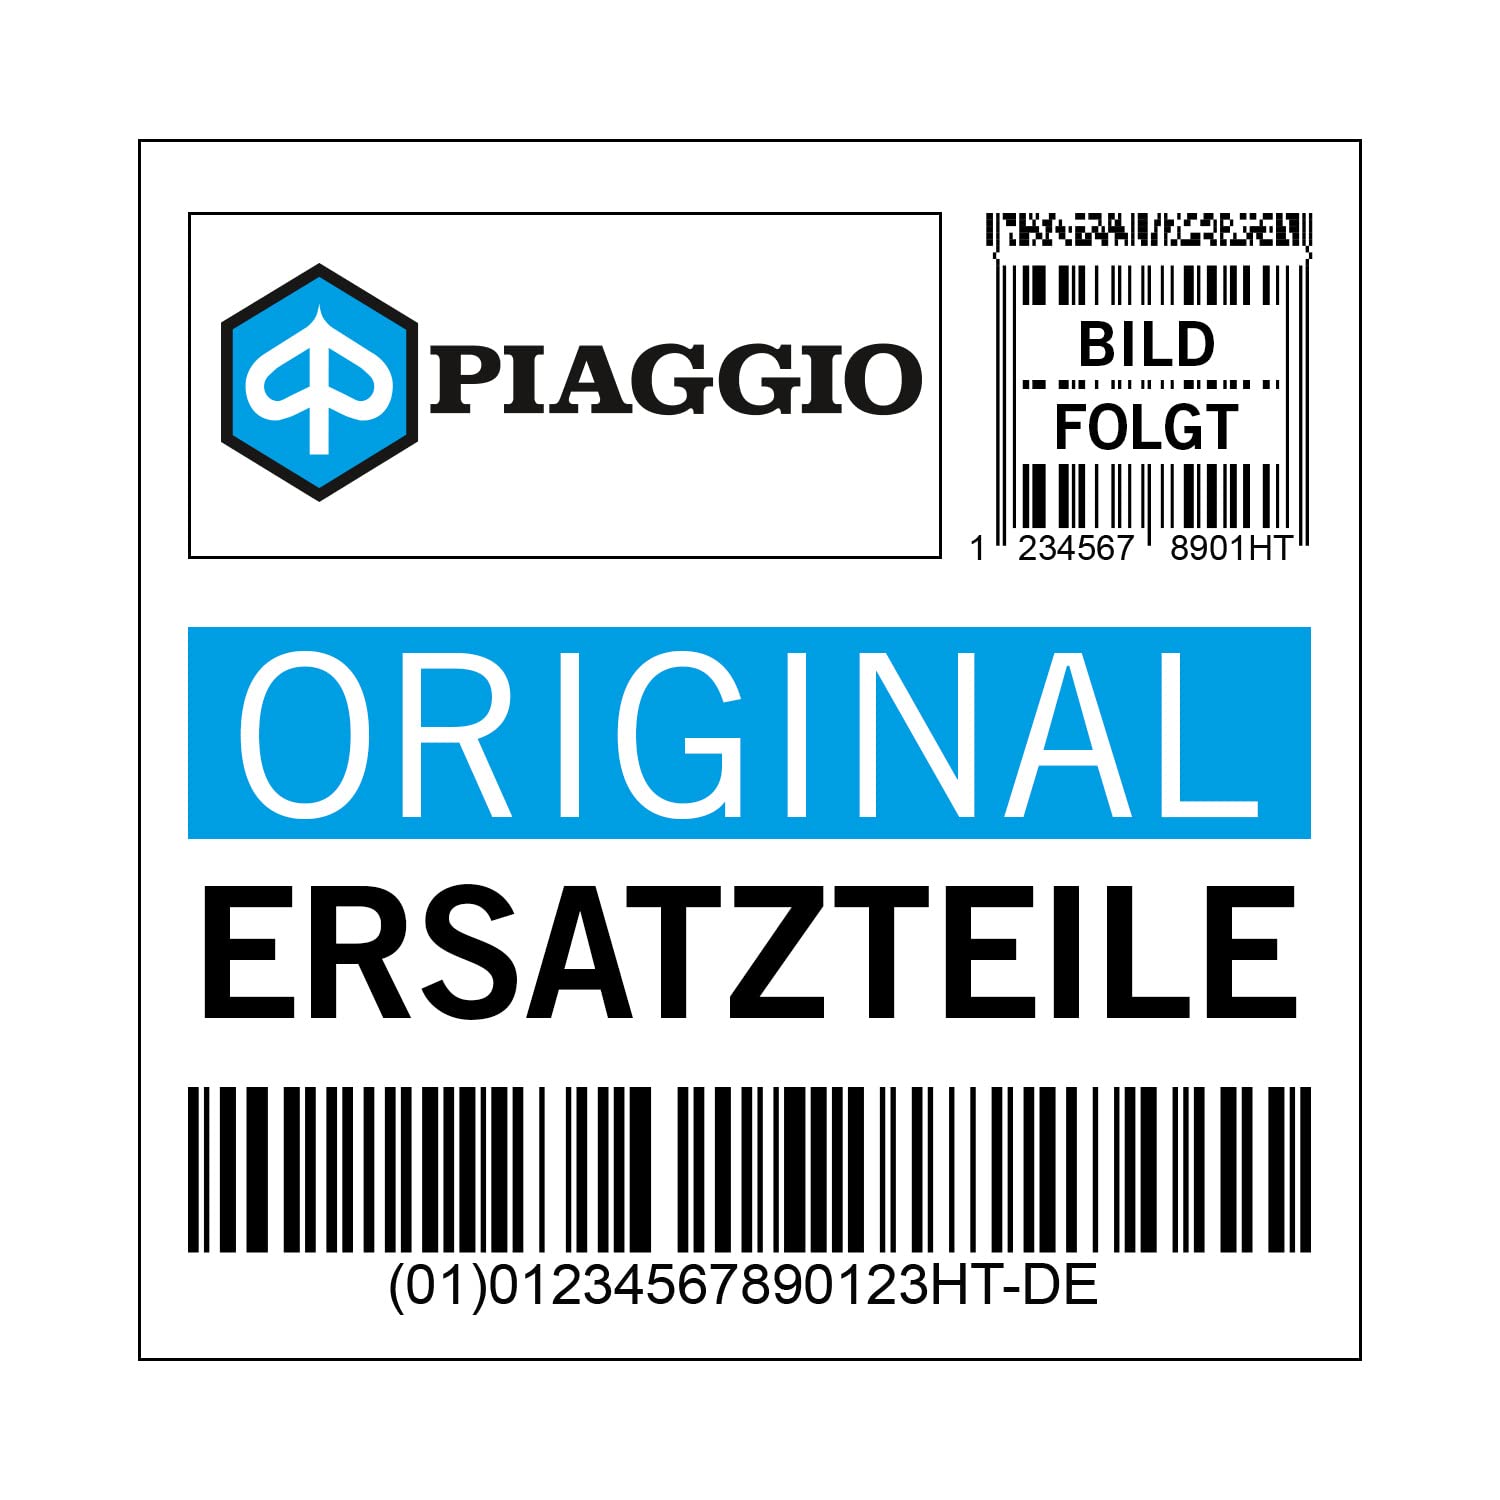 Emblem Piaggio vorne, sechseckig, 655368 von Maxtuned